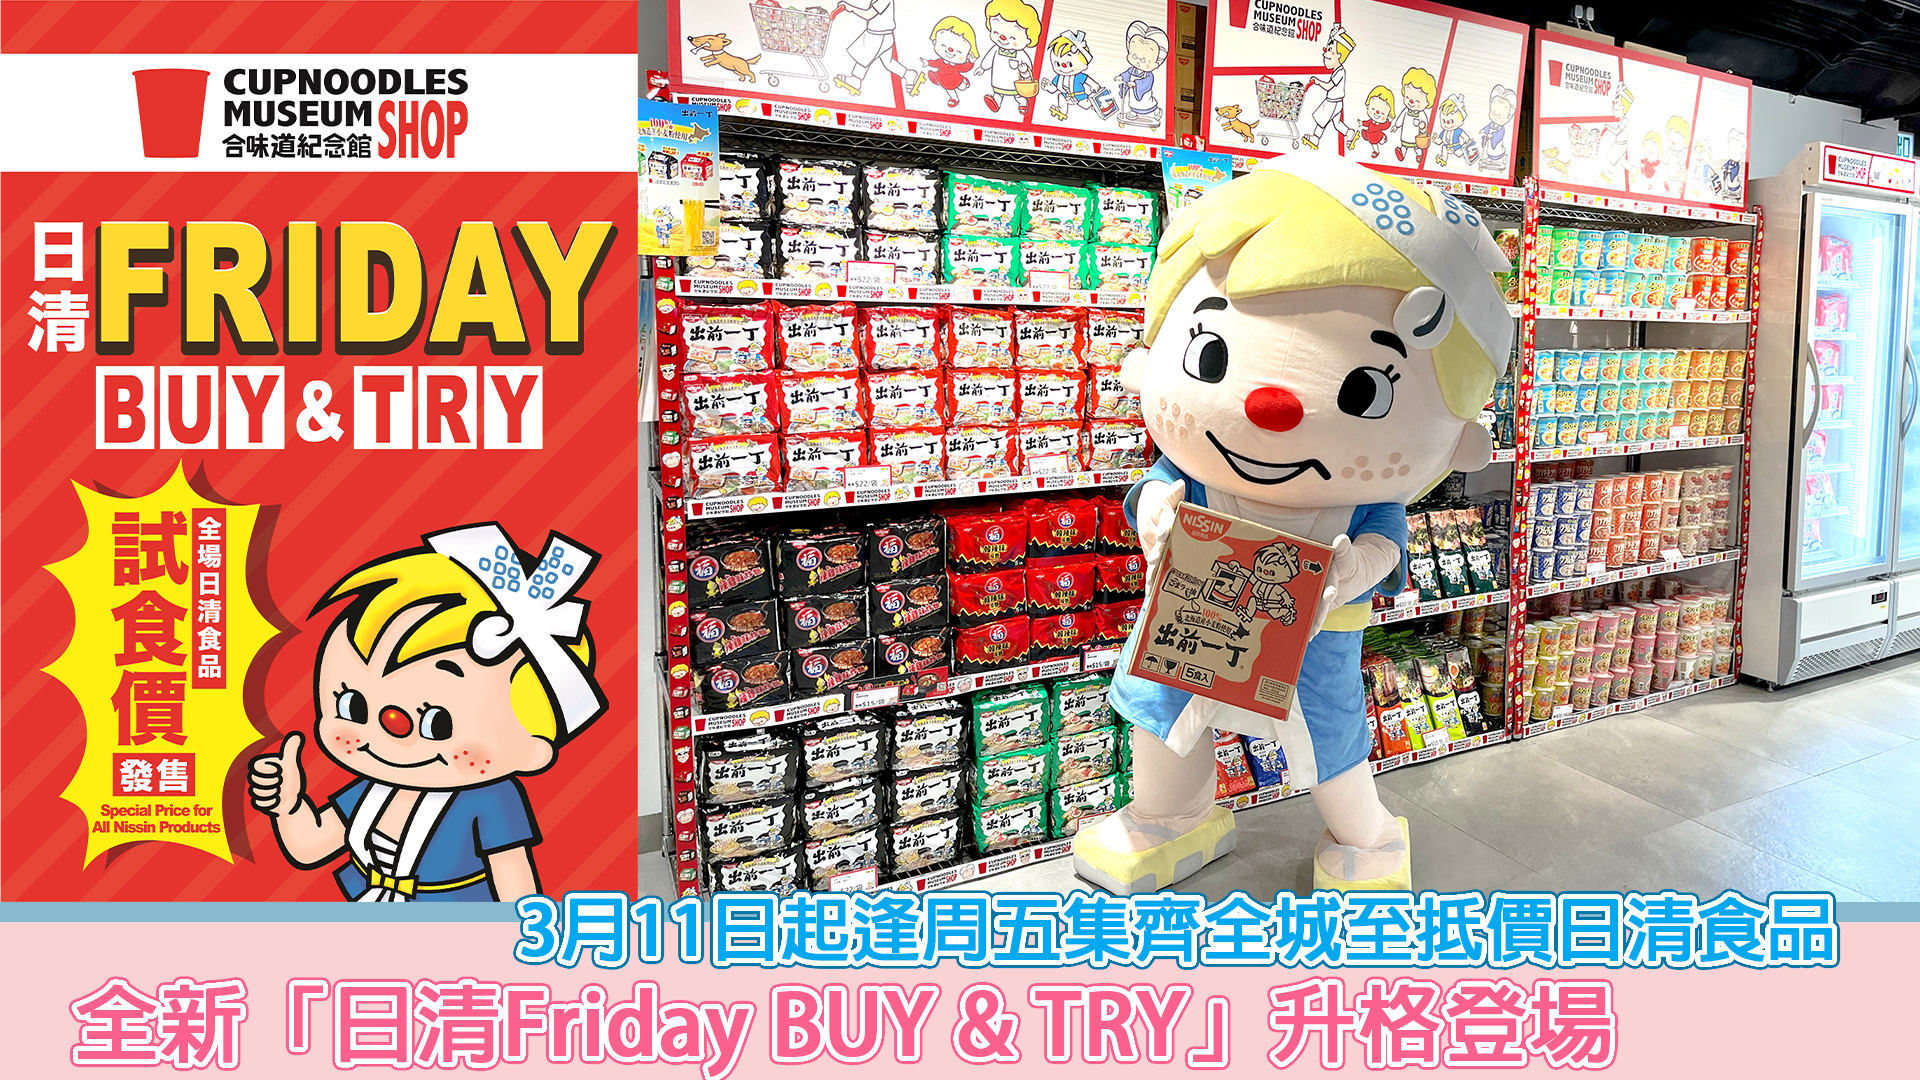 全新「日清Friday BUY & TRY」升格登場3月11日起逢周五集齊全城至抵價